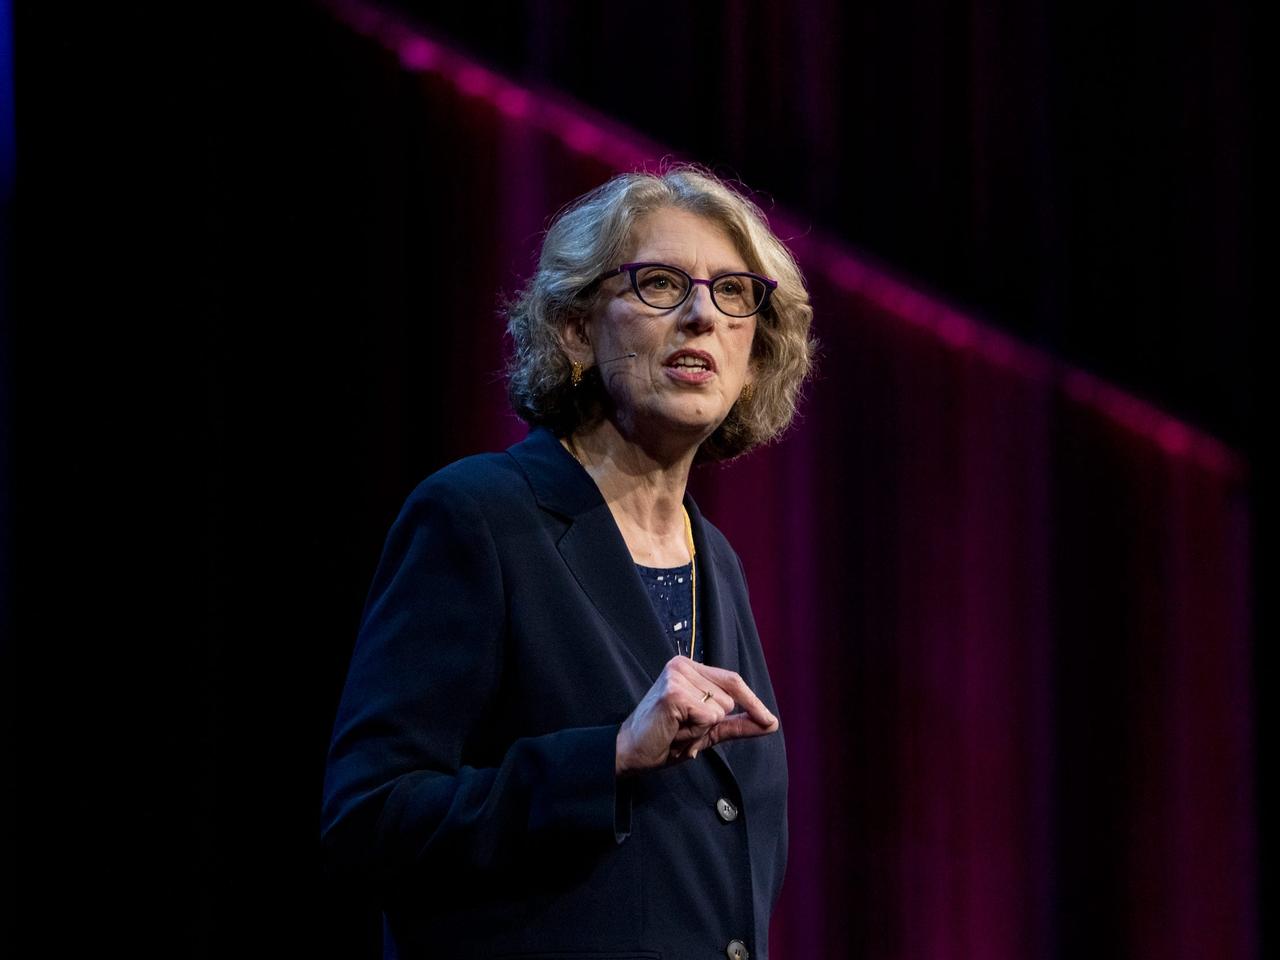 TED2022カンファレンスで週4日勤務制について語る経済学者ジュリエット・ショア。